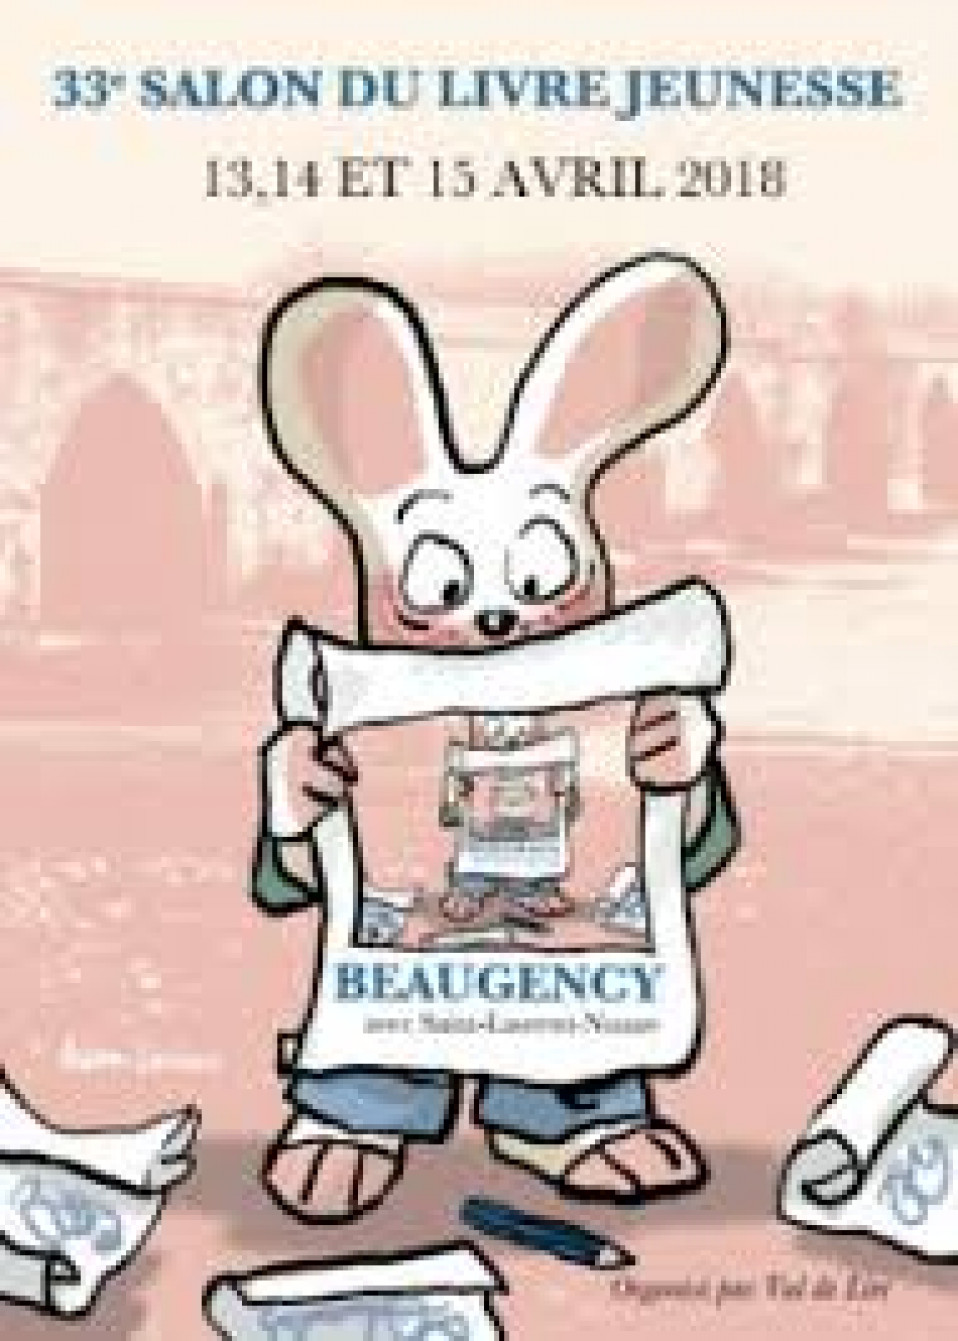 Salon du livre jeunesse de Beaugency du vendredi 13 au dimanche 15 avril 2018